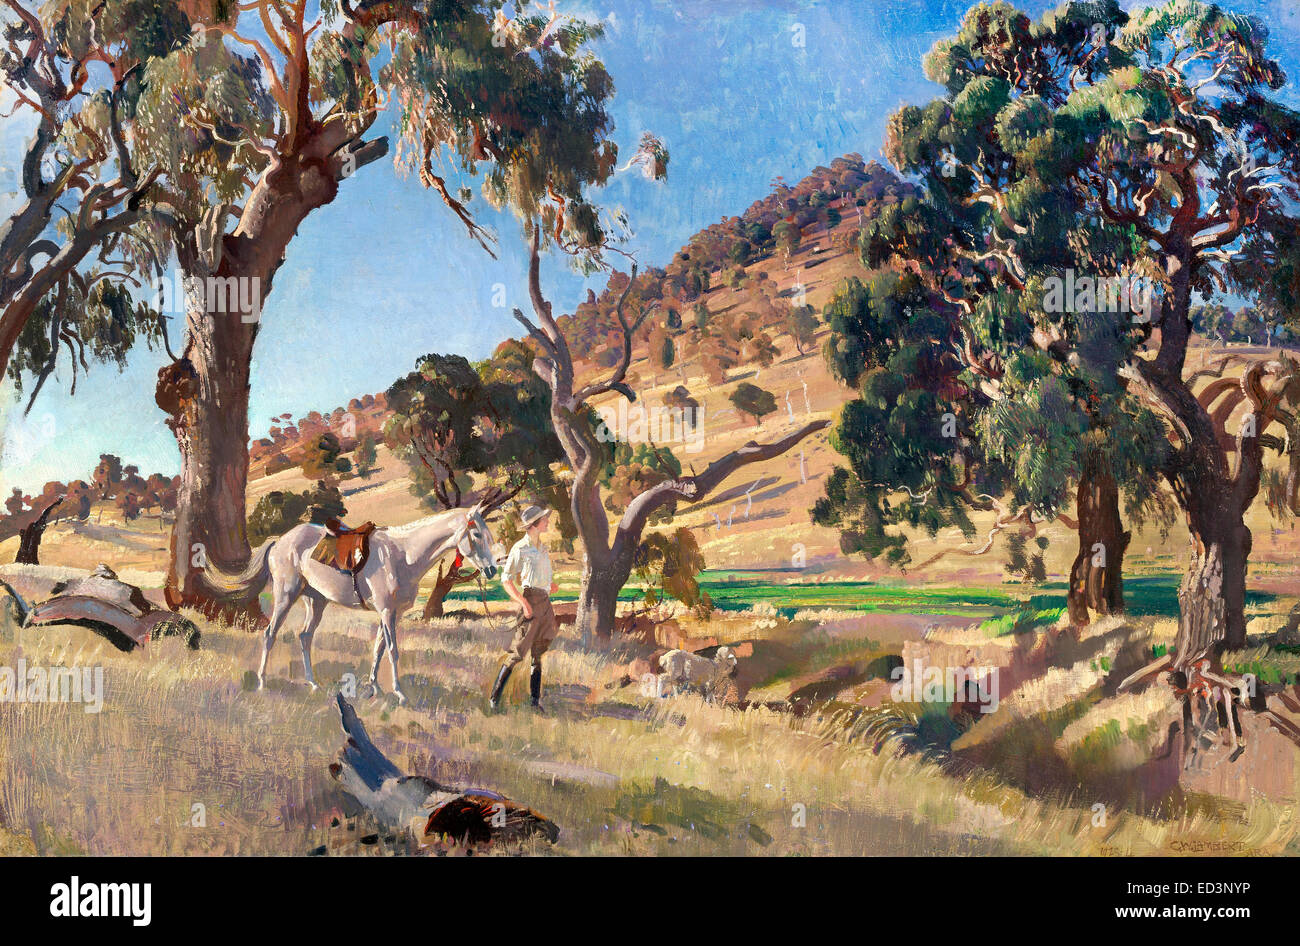 George Washington Lambert - die Hausbesetzer Tochter 1923-1924 Öl auf Leinwand. National Gallery of Australia, Canberra, Australien. Stockfoto